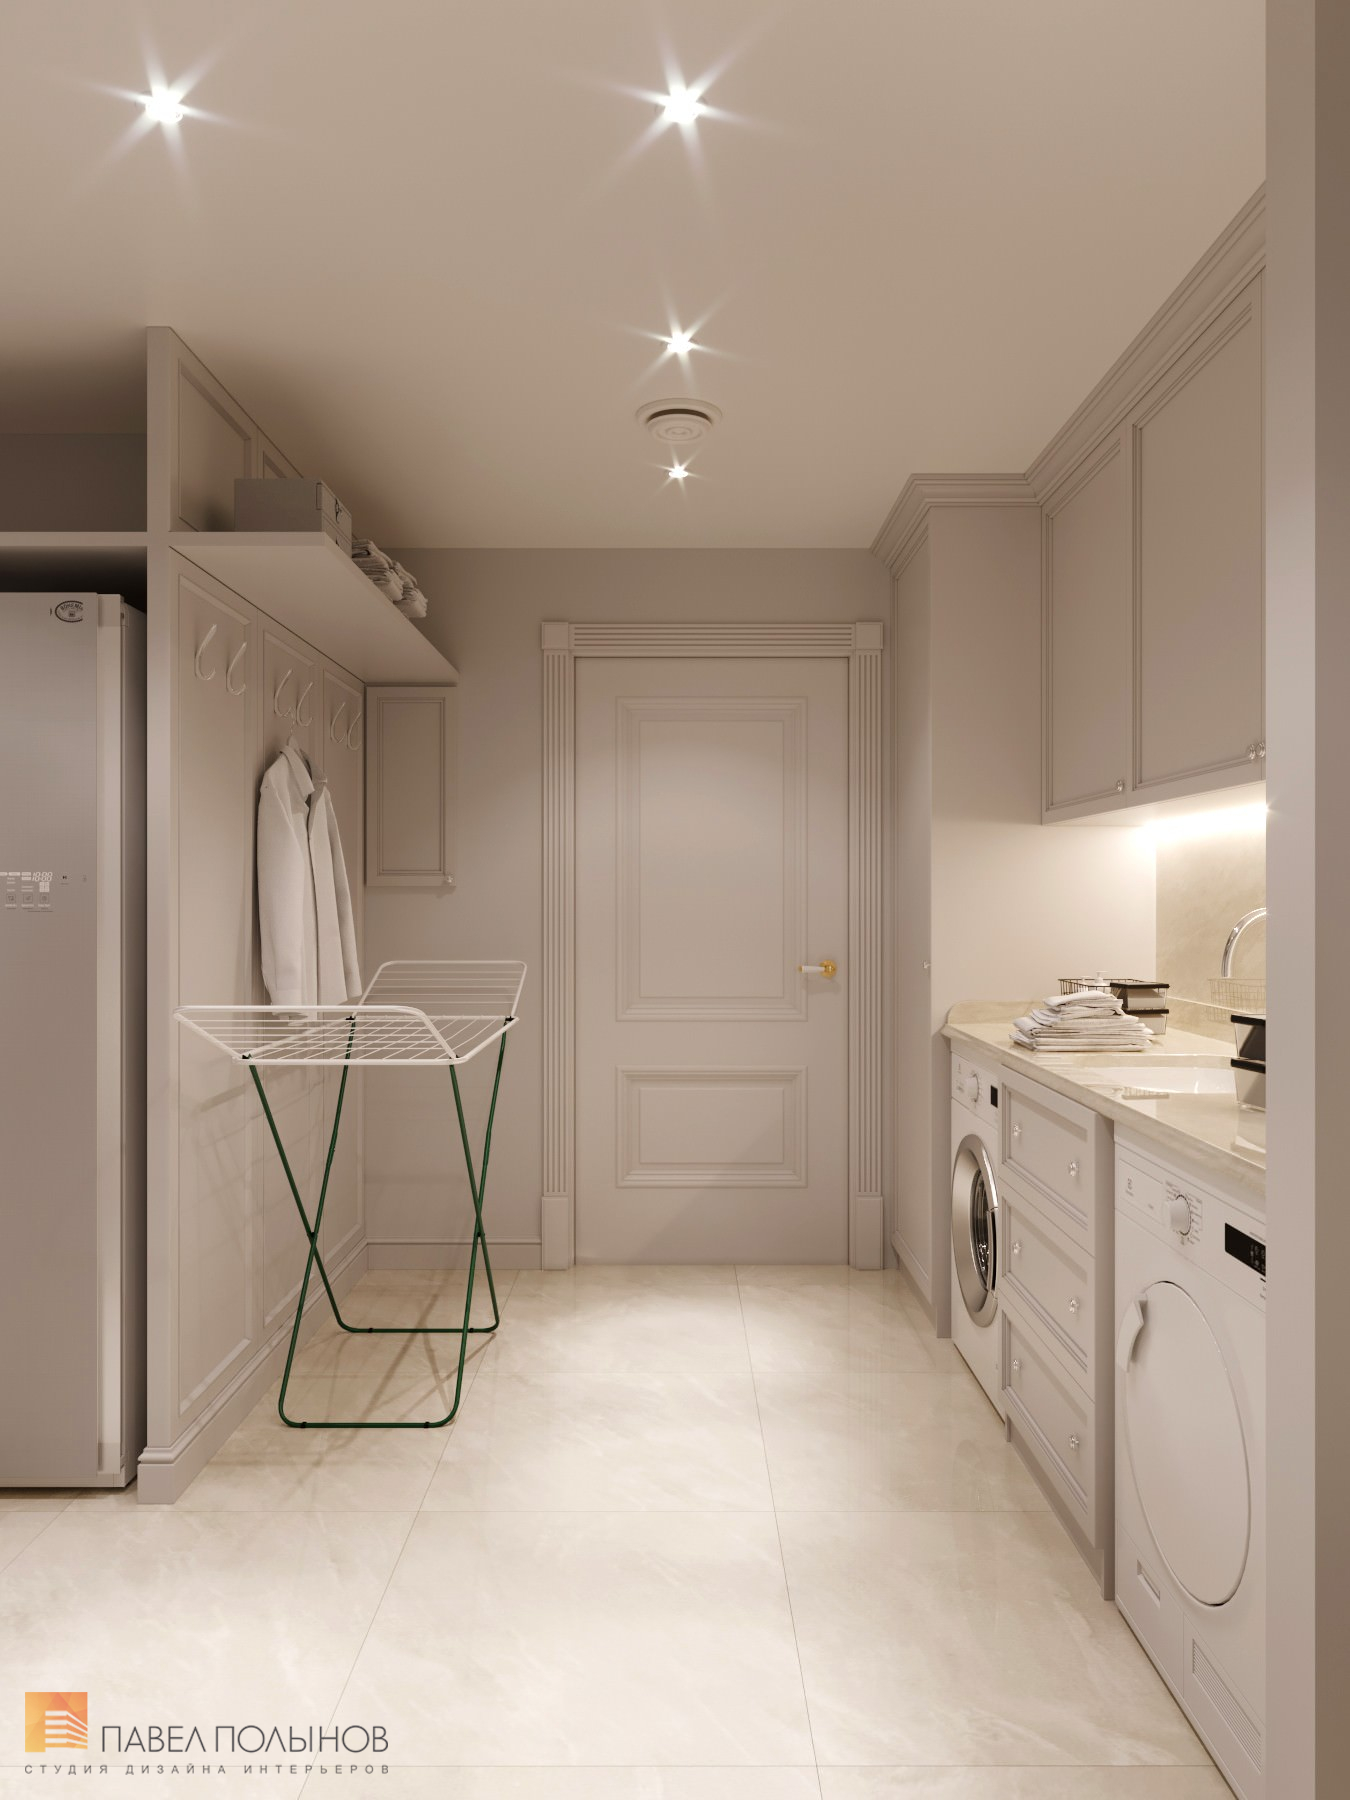 Фото дизайн хозяйственной комнаты из проекта «Дизайн квартиры в стиле современной классики, ЖК «Riverside», 180 кв.м.»